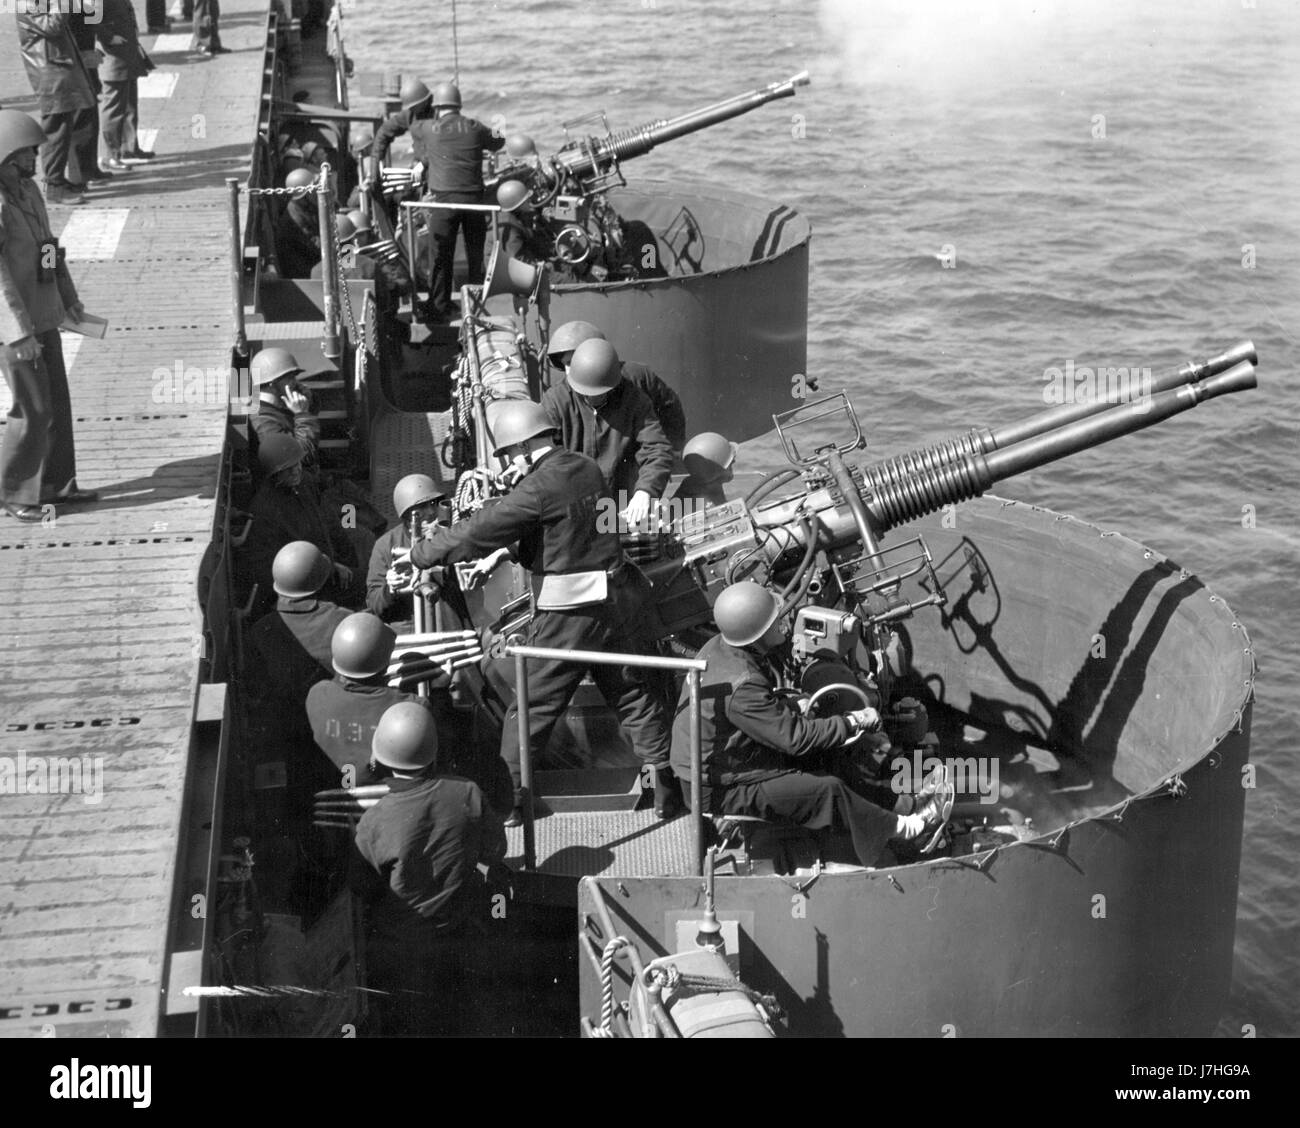 WW II - deux doubles canons Bofors 40 mm, pratiquant pour la bataille. Par texte imprimé sur le dos de cette photo, ces canons sont montés sur « l'un des nouveaux porte-avions américains - un navire de guerre élégant et rationalisé converti à partir d'un croiseur léger ». Cette photo du 21 juin 1943 montre les canons anti-aéronefs de Bofors qui se pratiquent pendant la croisière à shakedown du navire. Cette photo officielle de la Marine américaine n'identifie pas le navire ou l'équipage. Pour voir mes images vintage connexes, recherchez: Prestor vintage WW II véhicule d'arme Banque D'Images